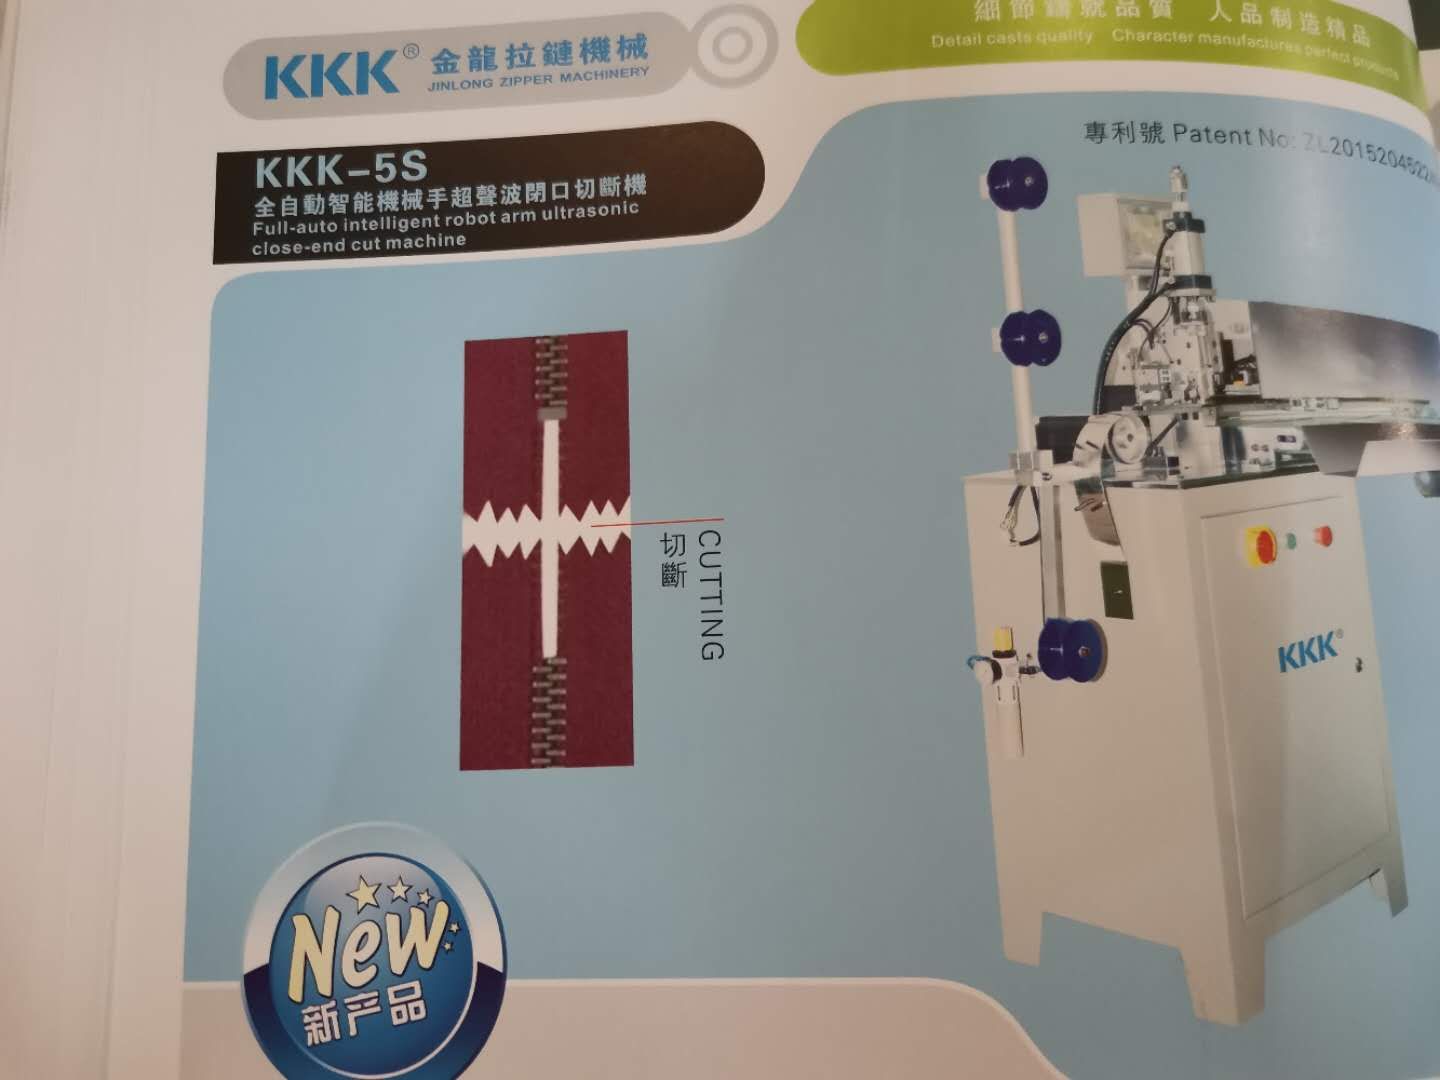 KKK—5B
全自动智能机械手超声波闭口切断机